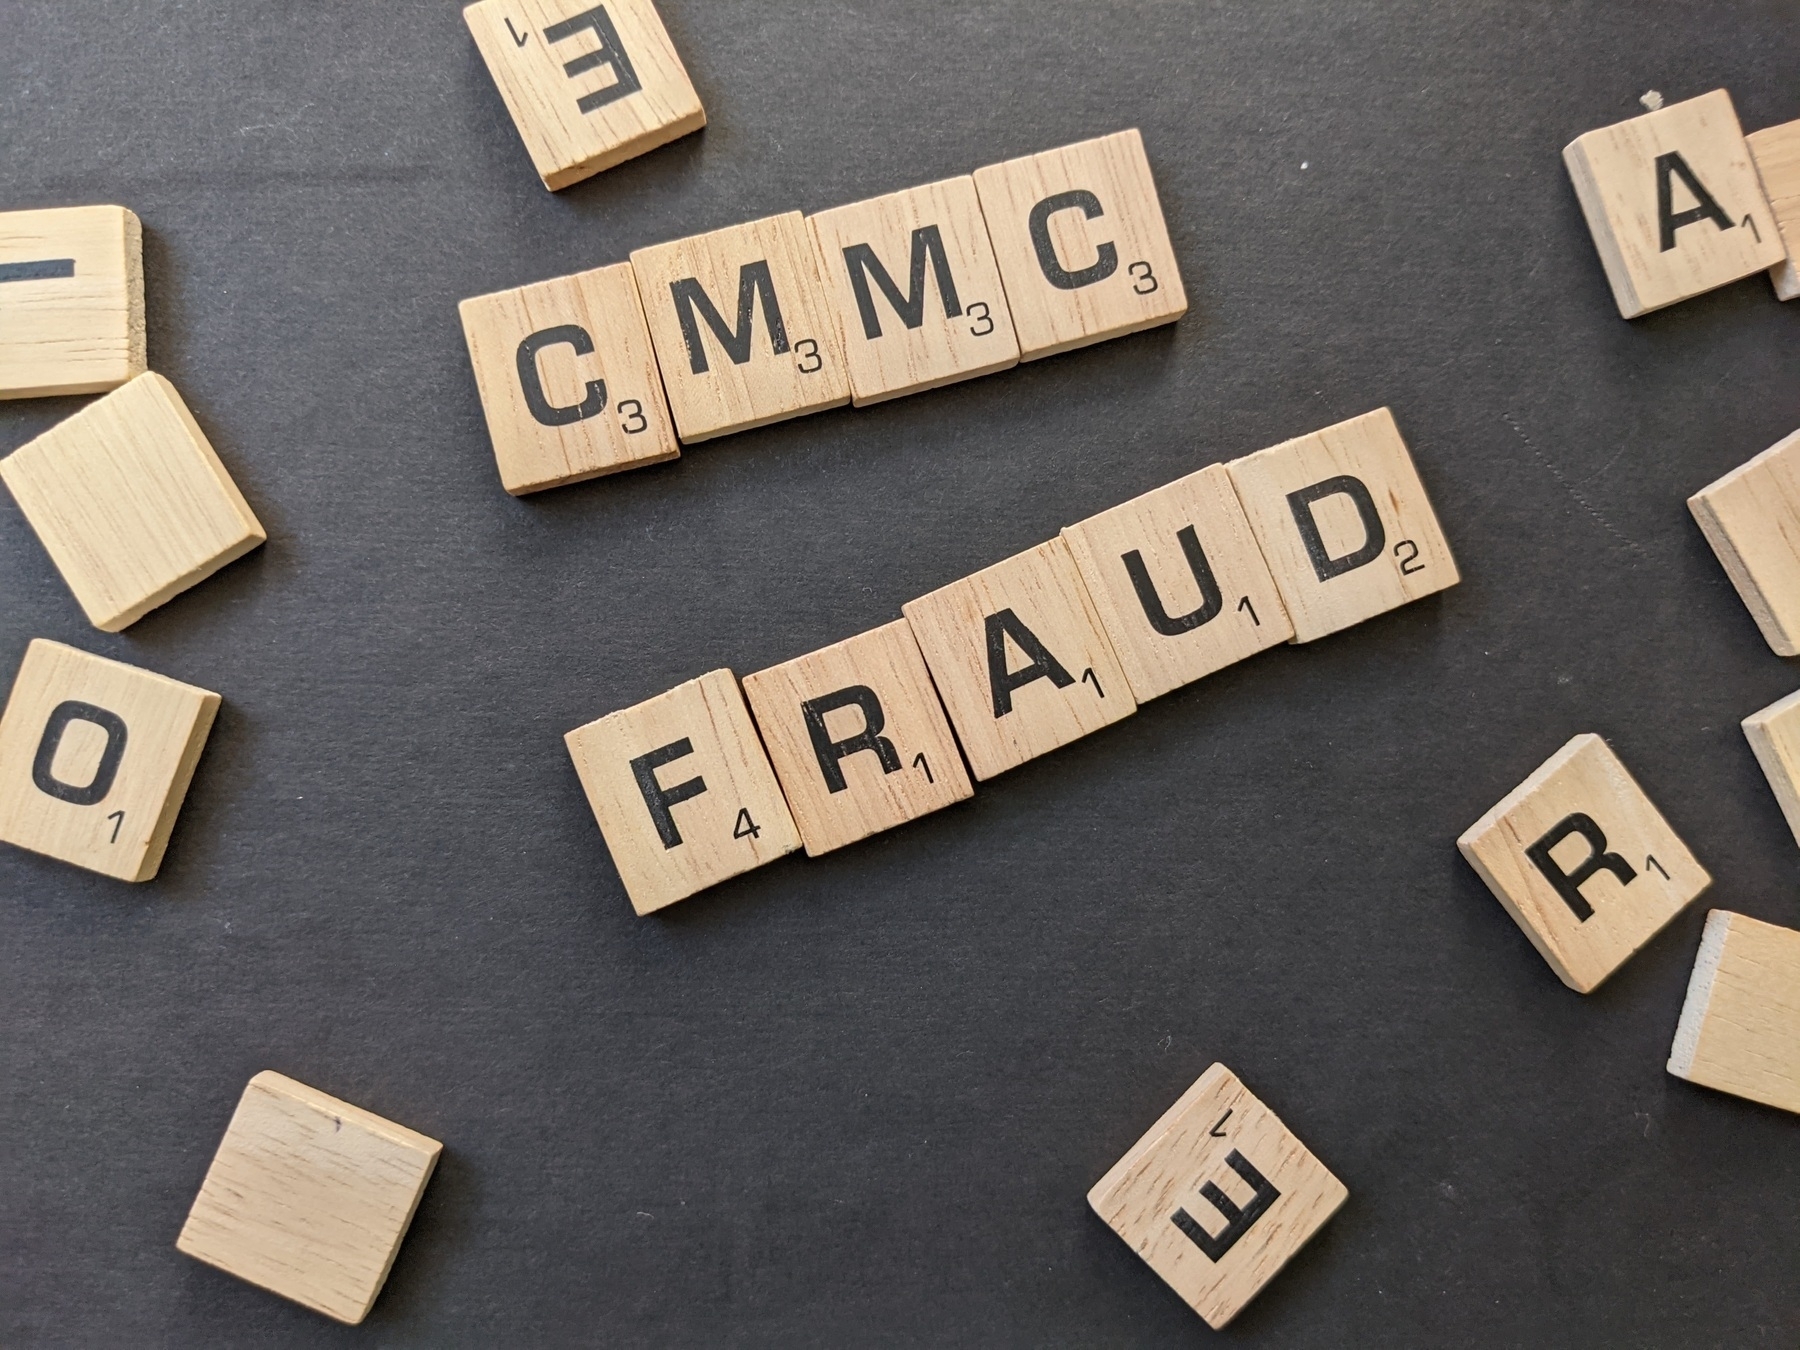 CMMC Fraud in scrabble letters